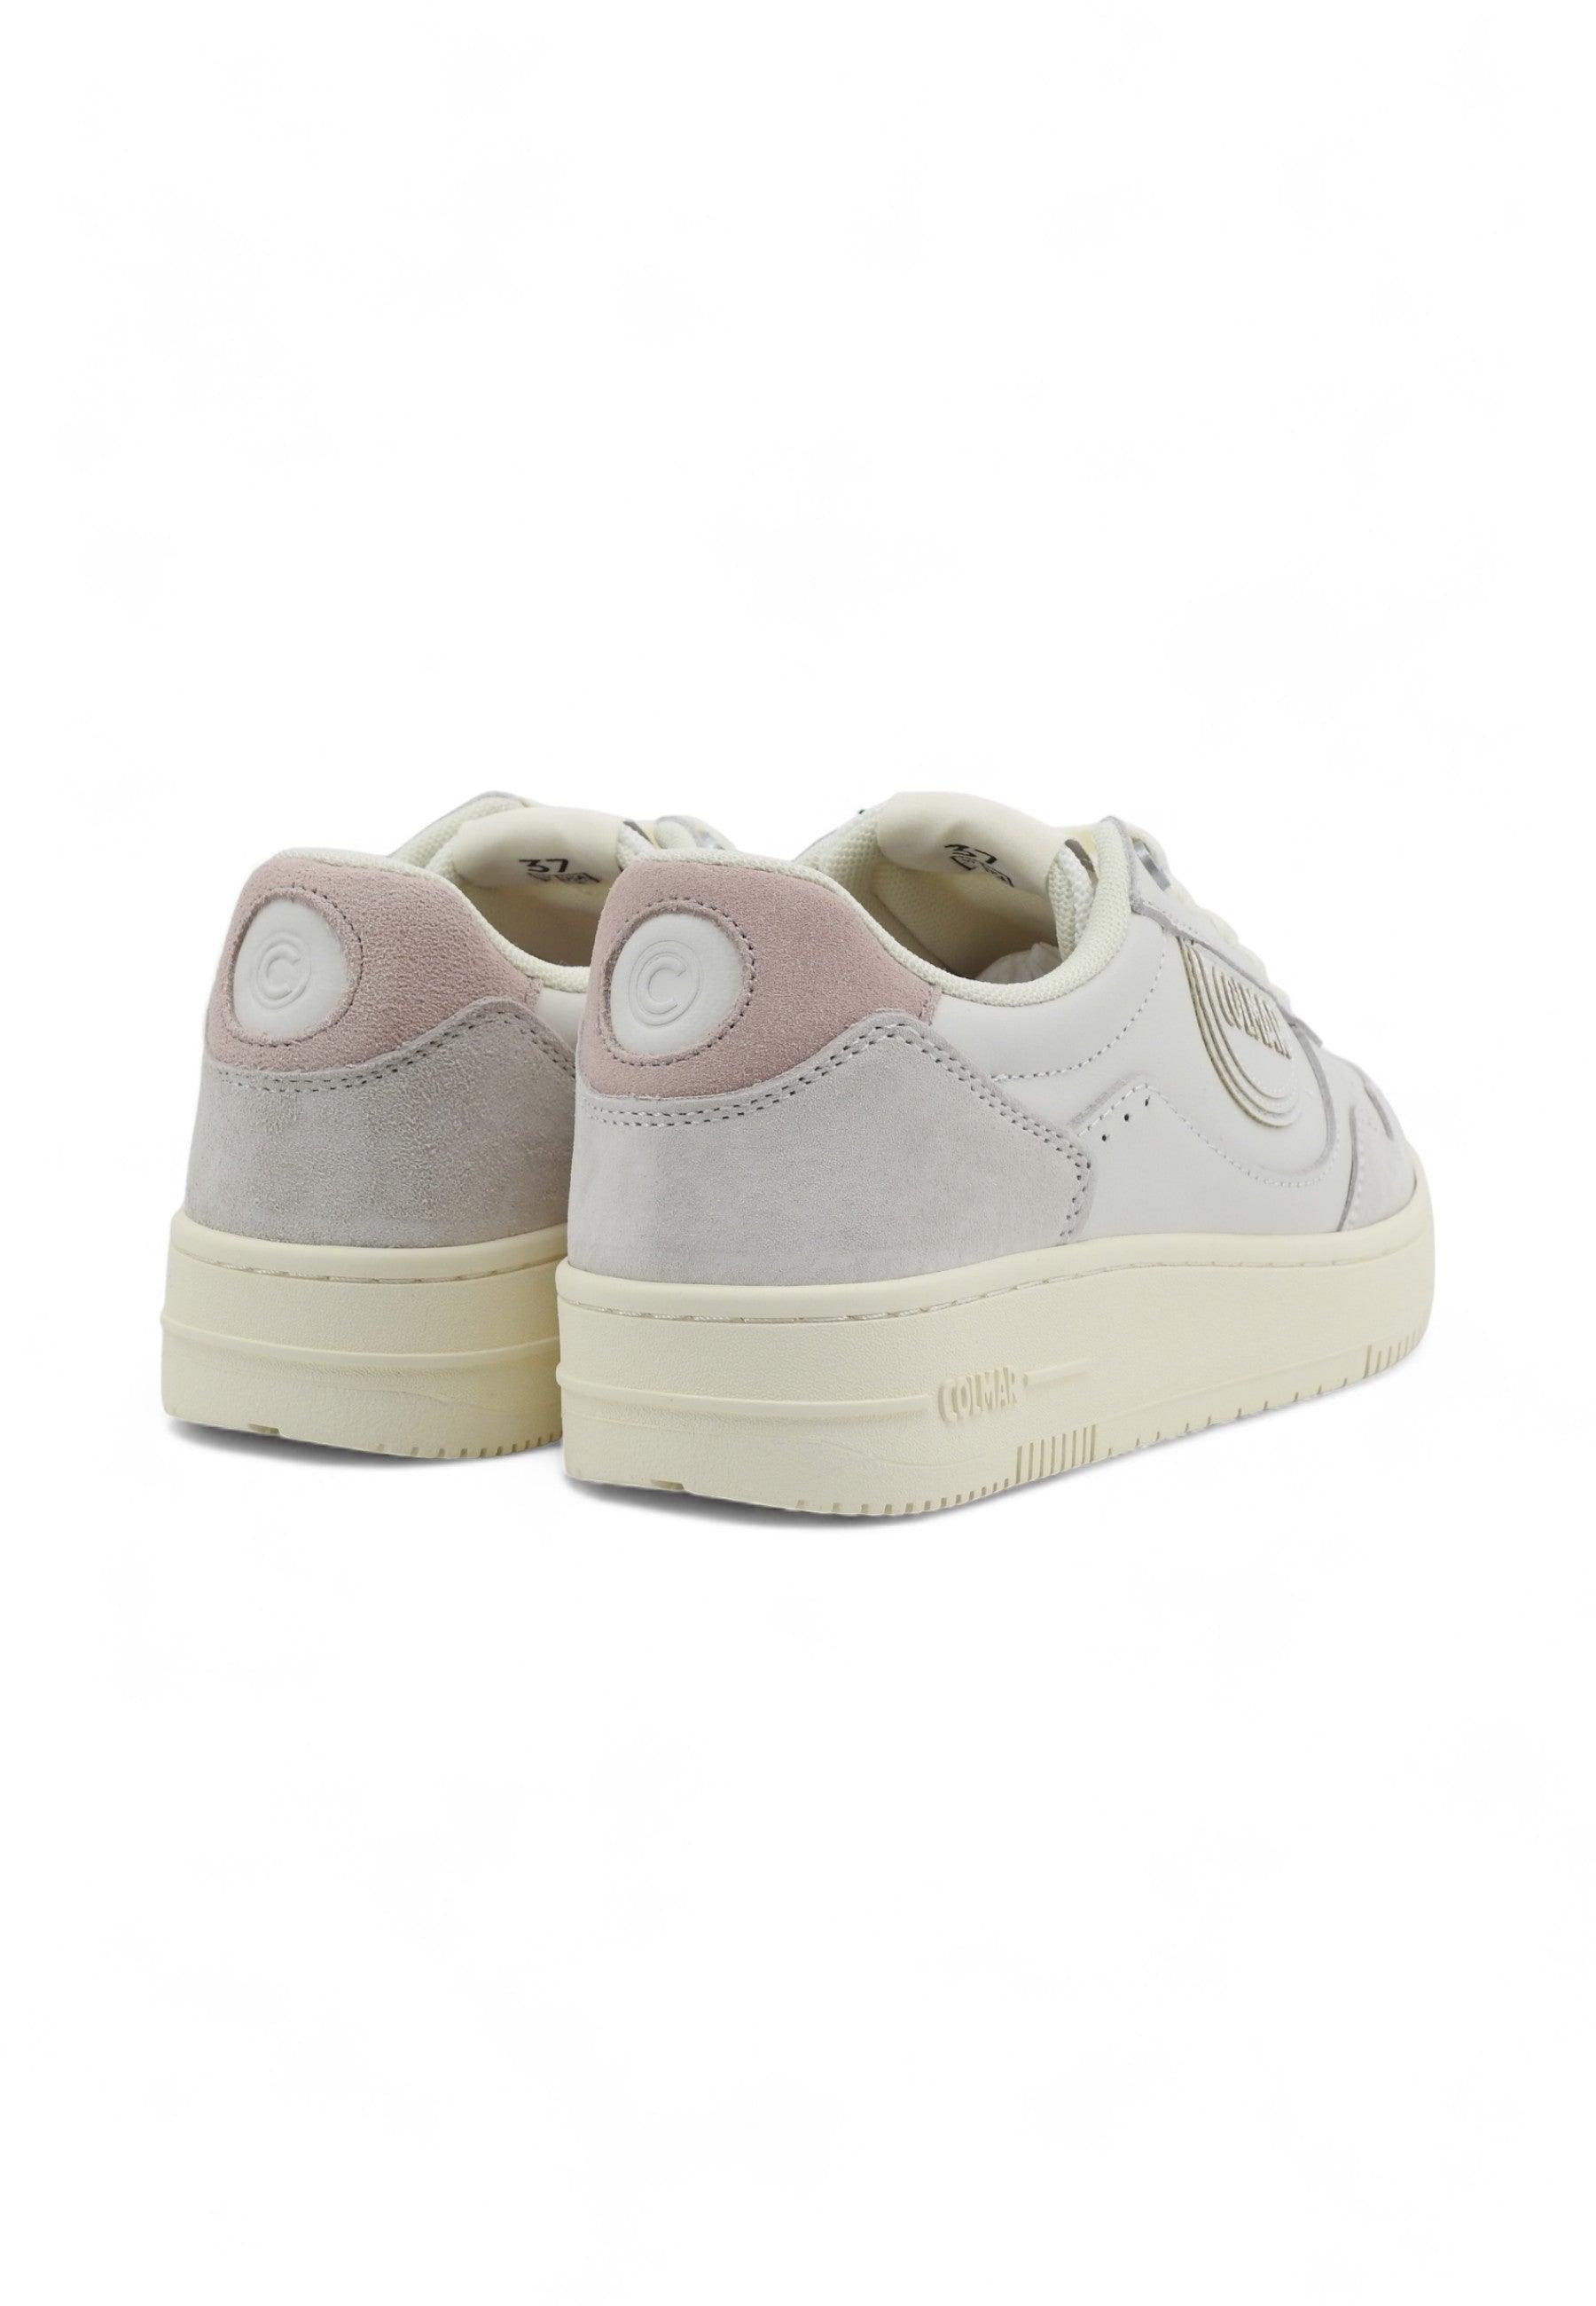 COLMAR Sneaker Donna White Rose AUSTIN LOOK - Sandrini Calzature e Abbigliamento